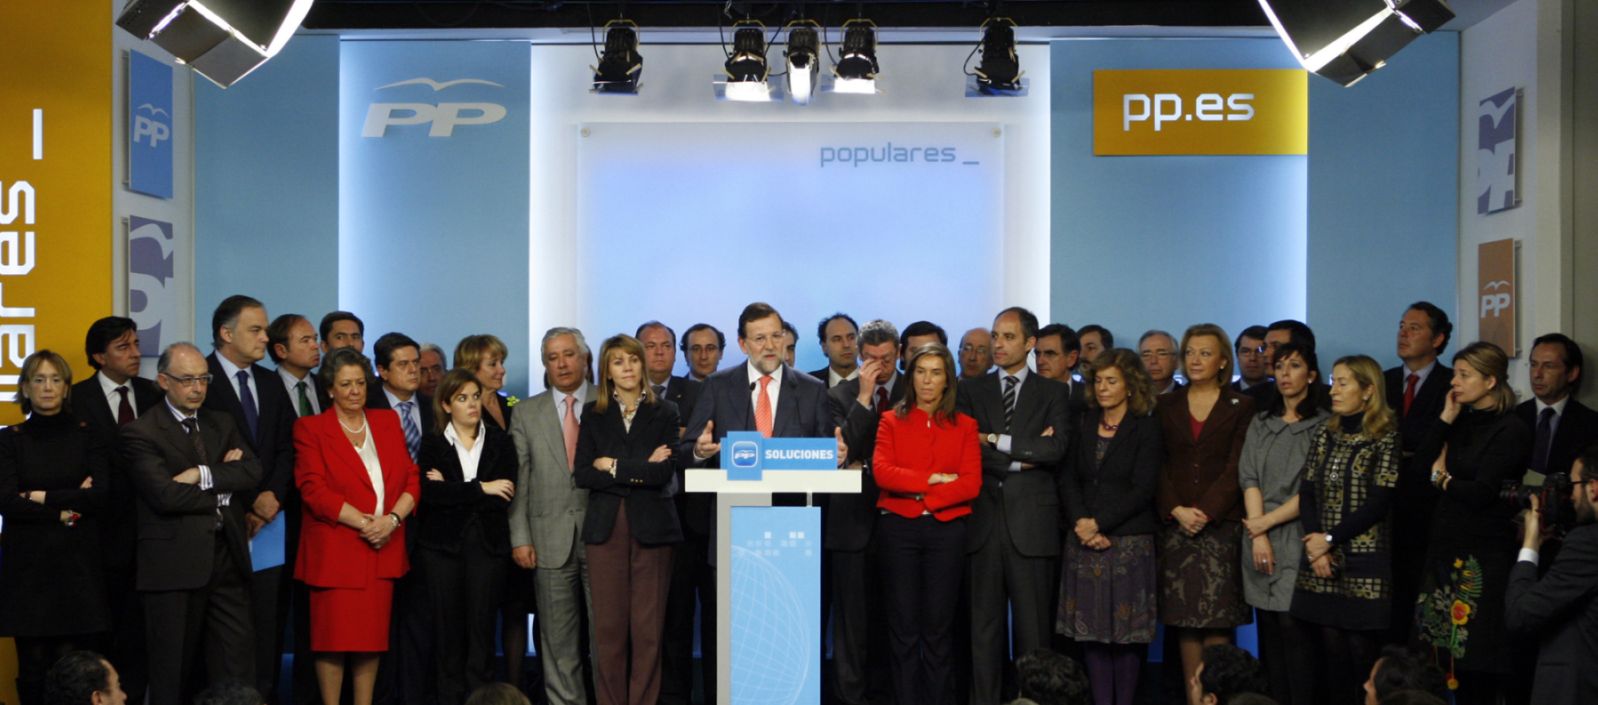 El día en que Rajoy dijo que la Gürtel era una conspiración contra el PP